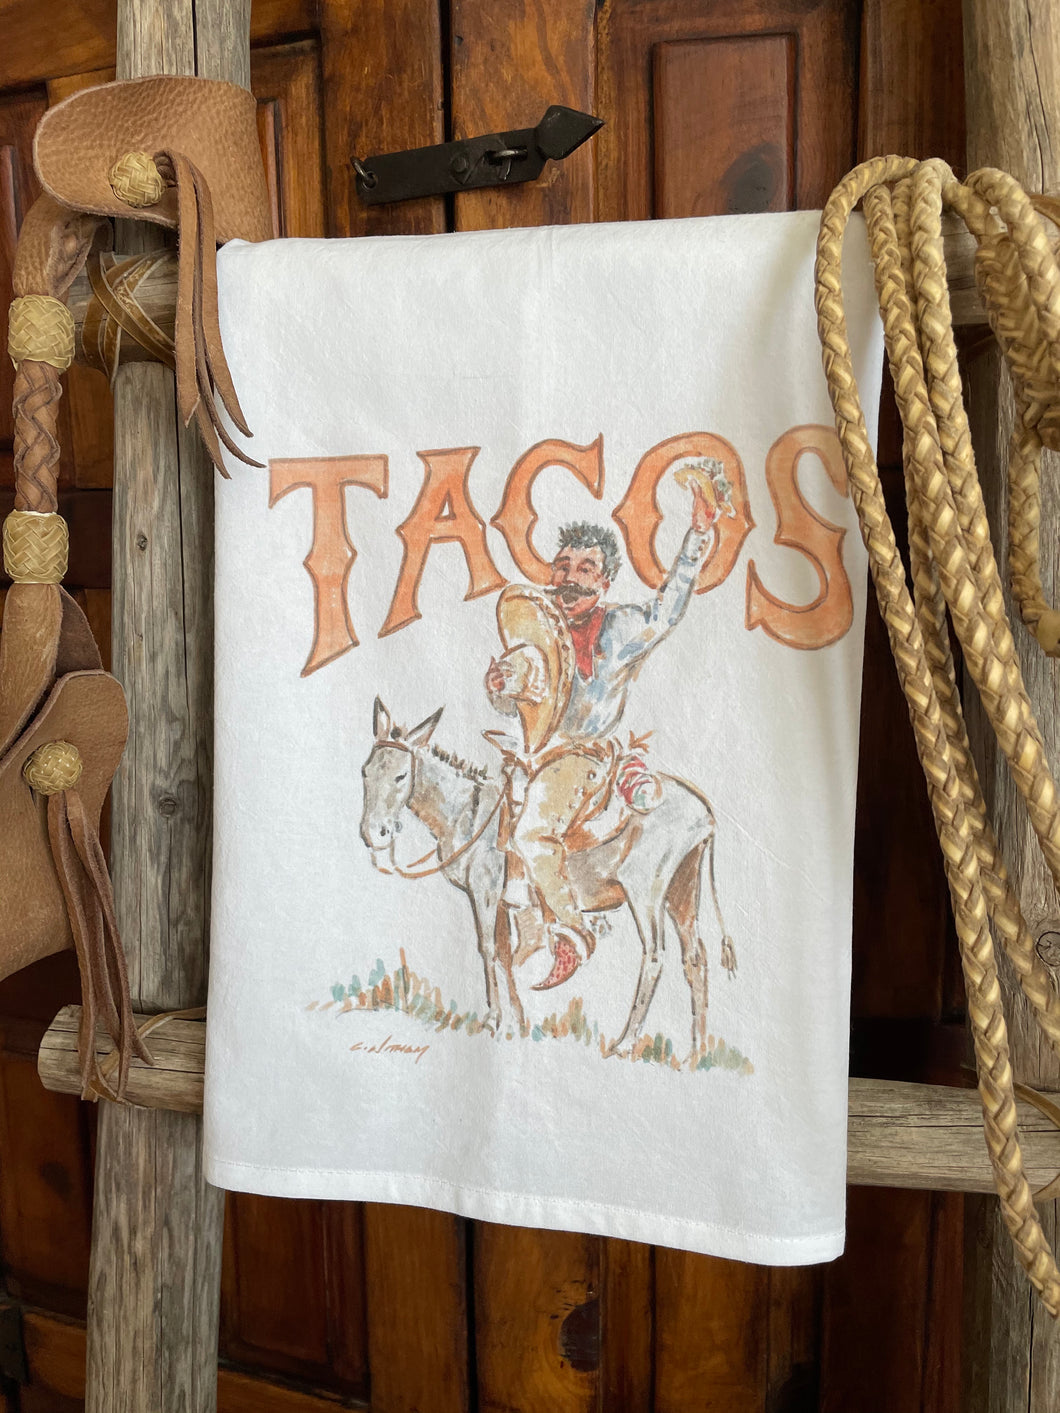 Señor Tacos Tea Towel